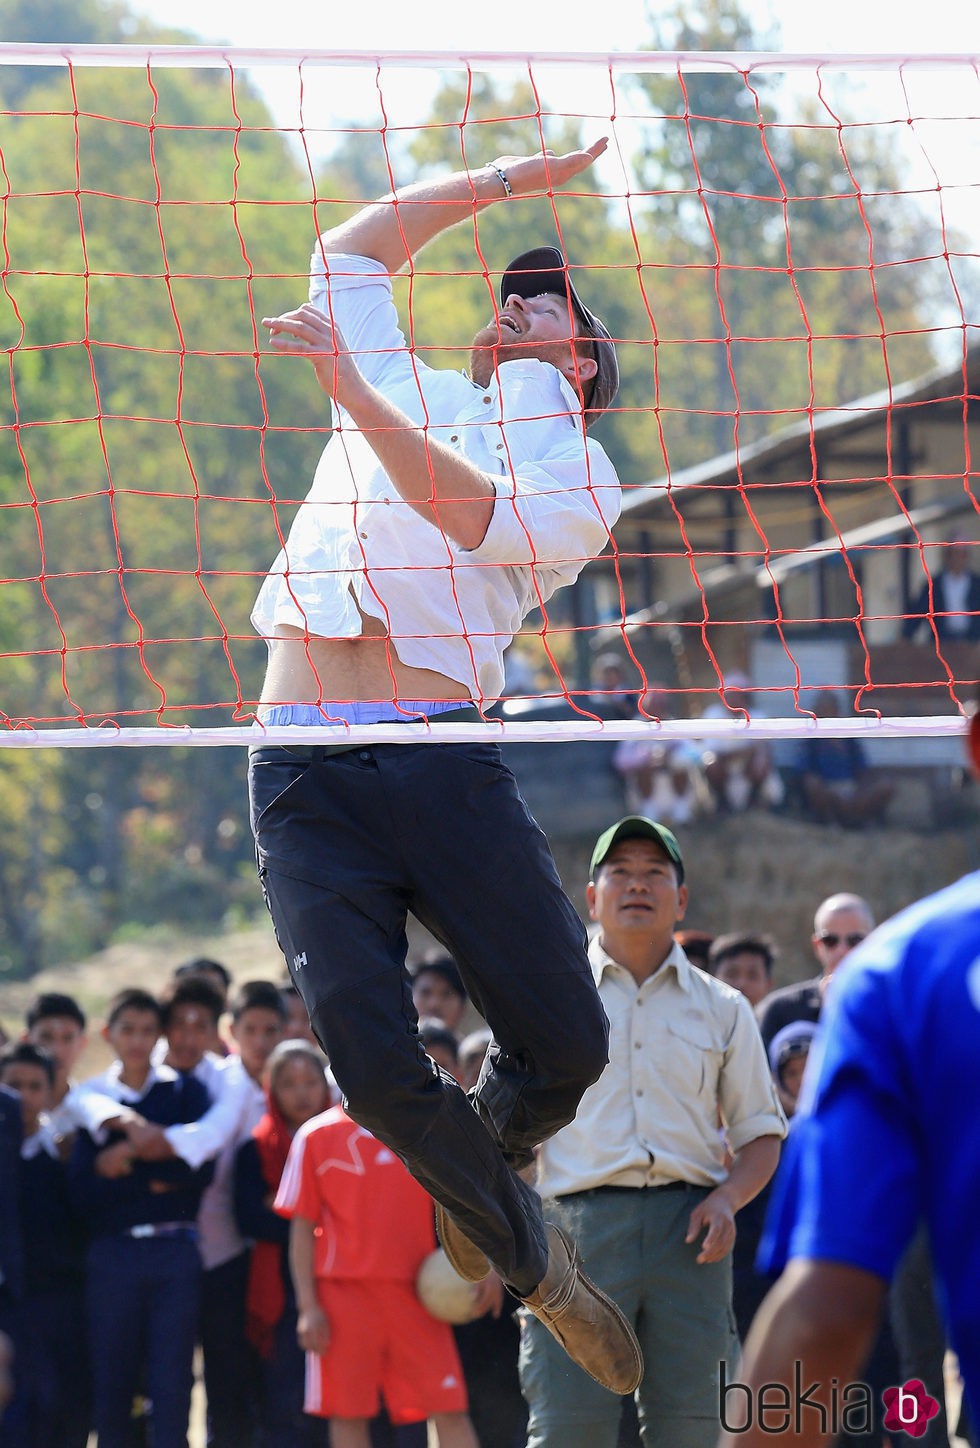 El Príncipe Harry jugando al vóleibol durante su viaje solidario a Nepal